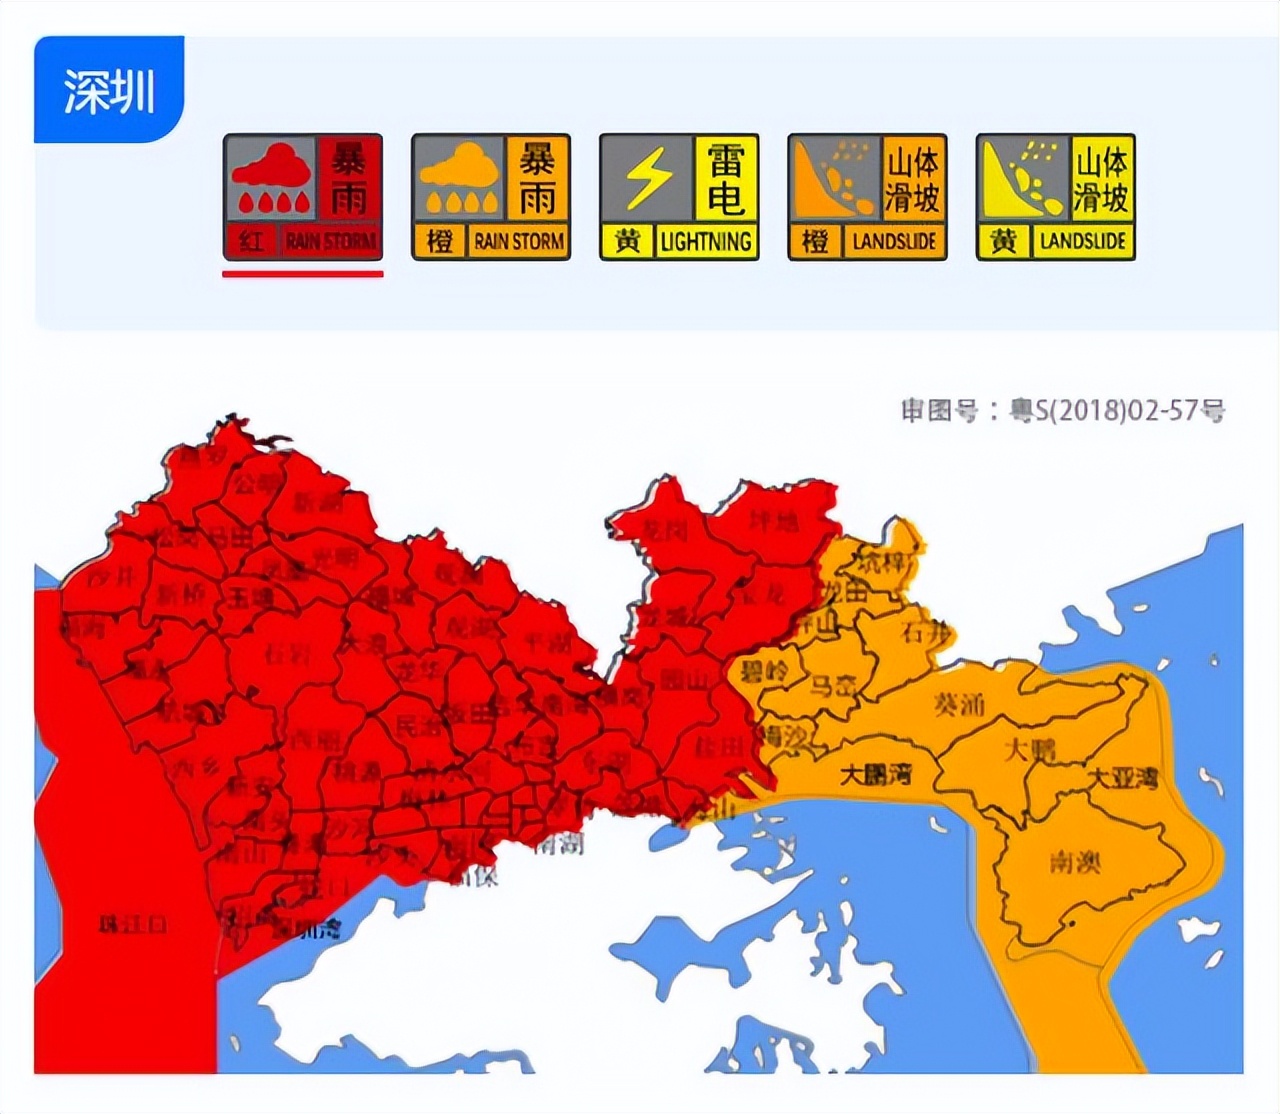 深圳暴雨红色预警继续生效中,8日全市停课